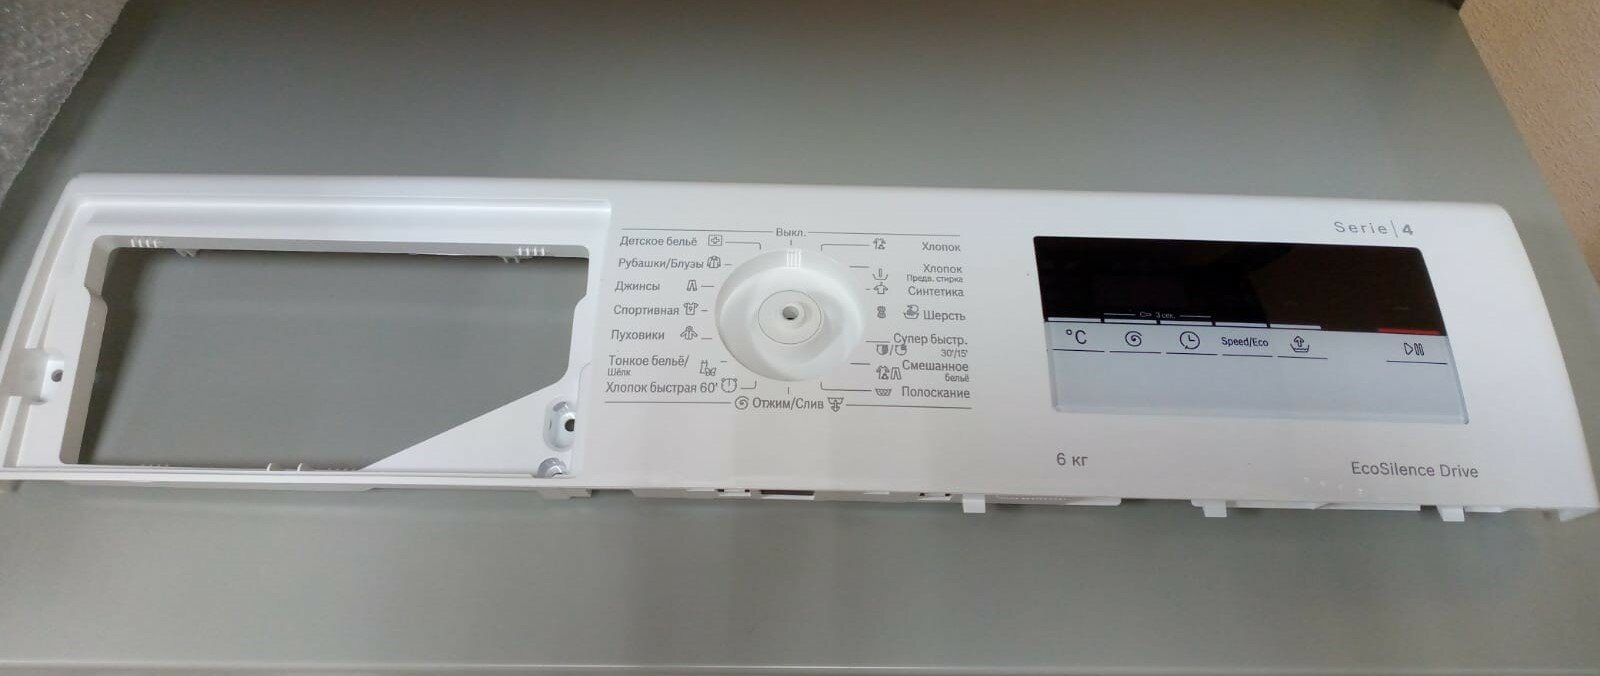 Панель управления стиральной машины Bosch, 11027110